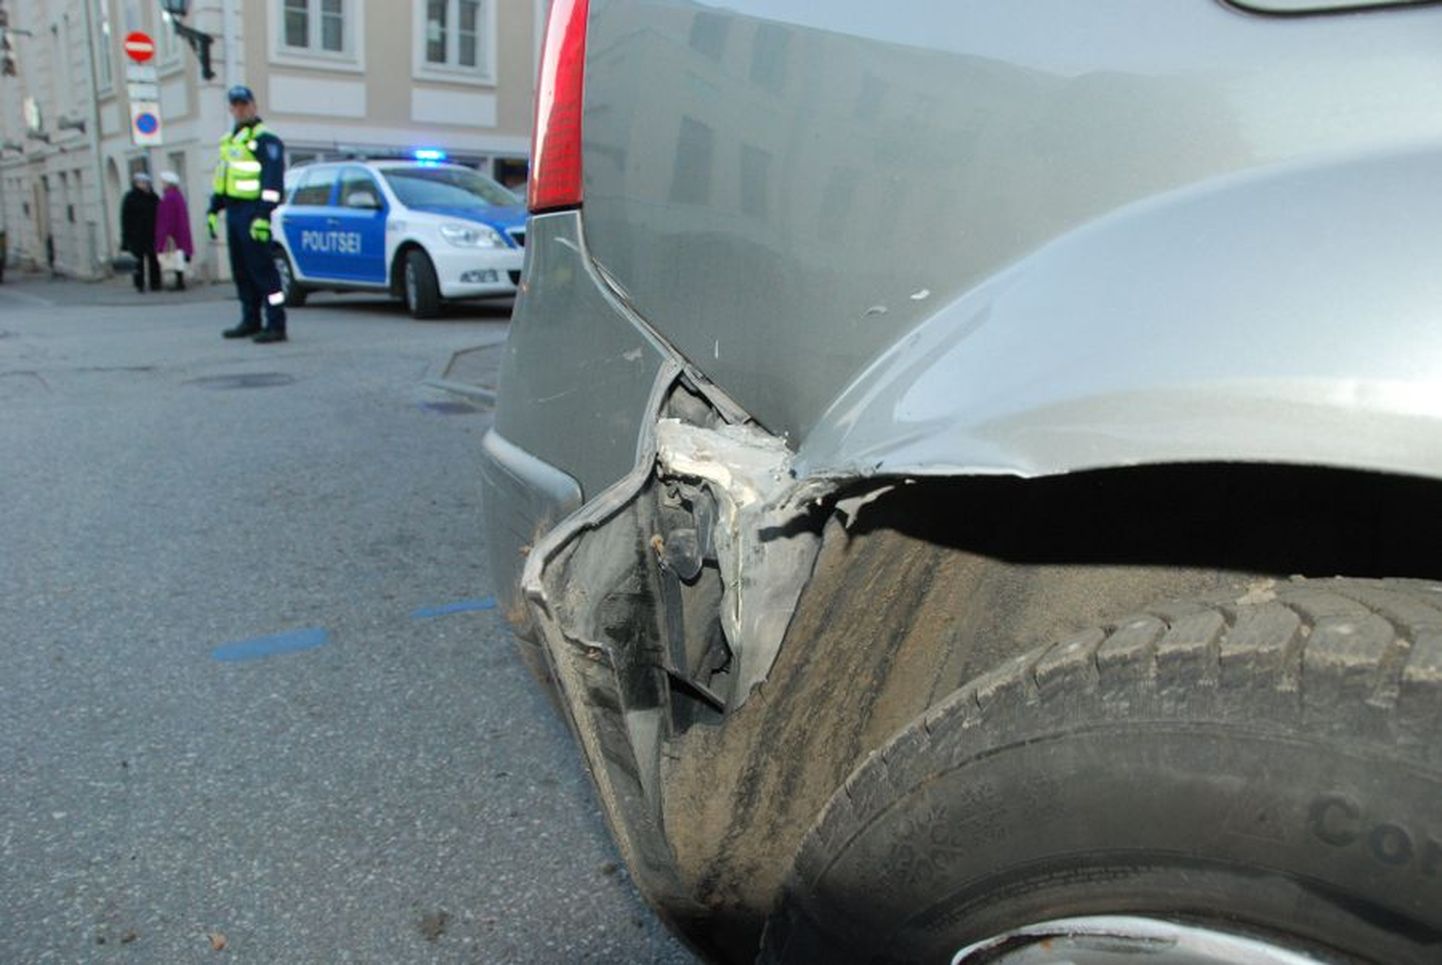 Ülikooli ja Jakobi tänava ristmiku juures rammis seni tabamata juht Renault sõiduautot ja põgenes.